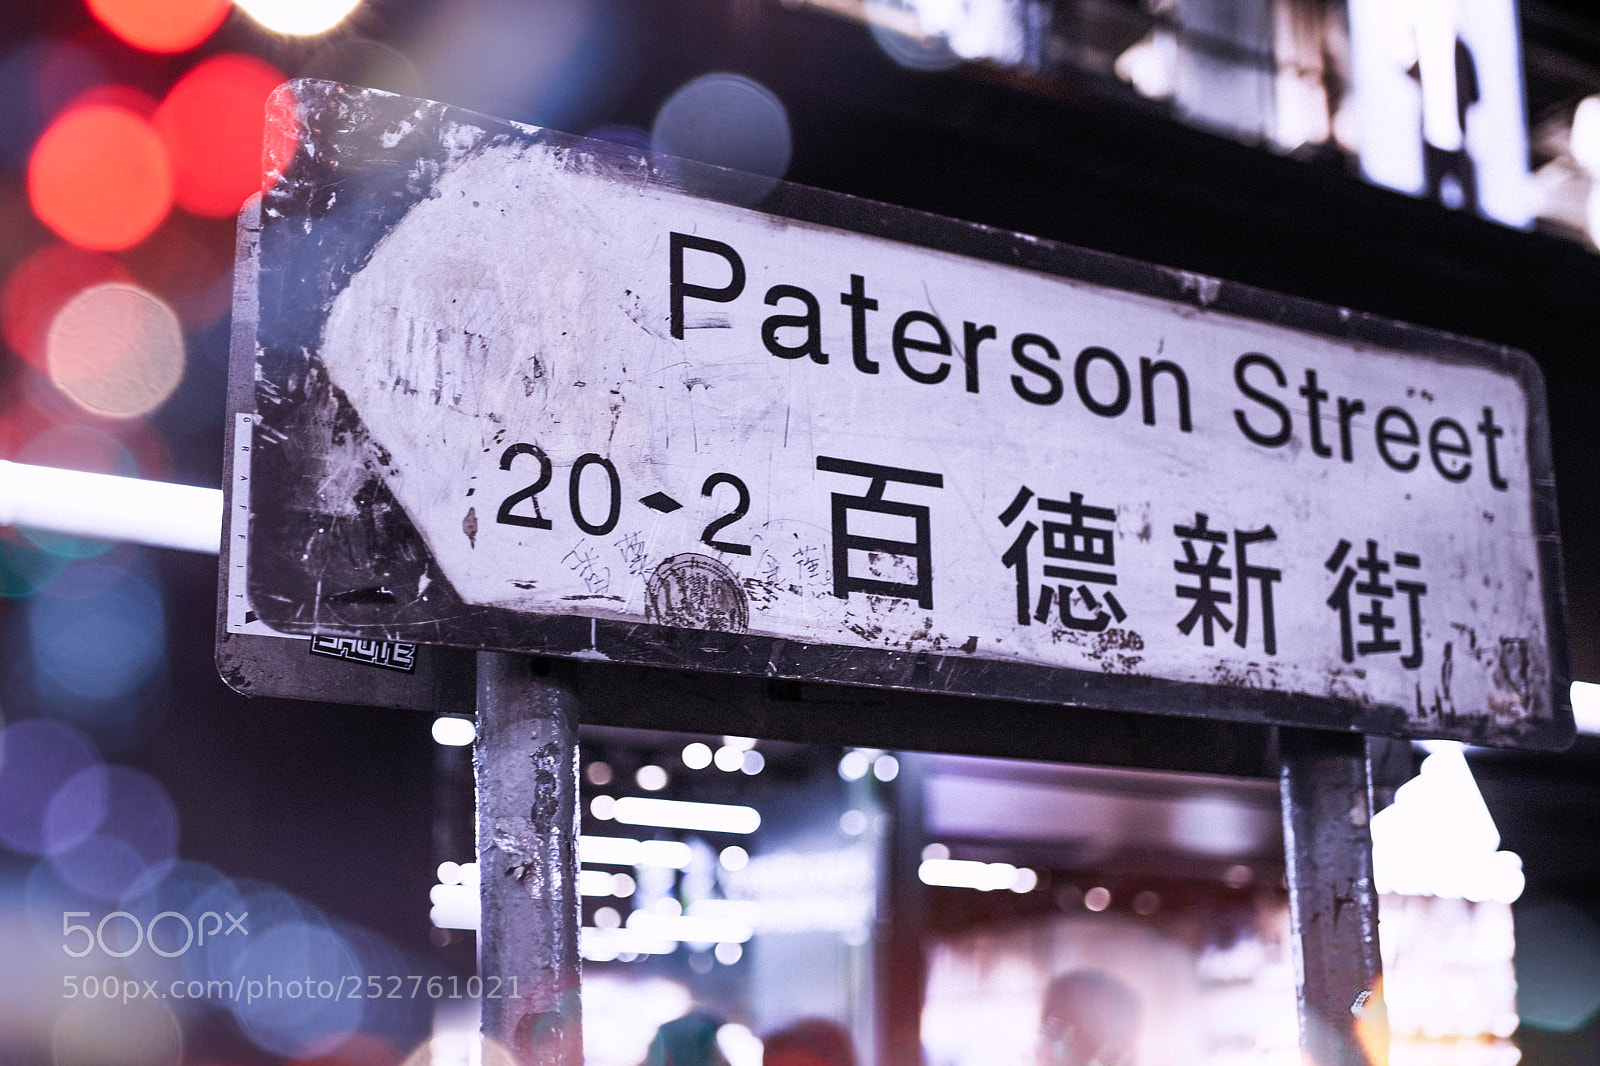 Nikon D750 sample photo. Hong kong paterson street photography